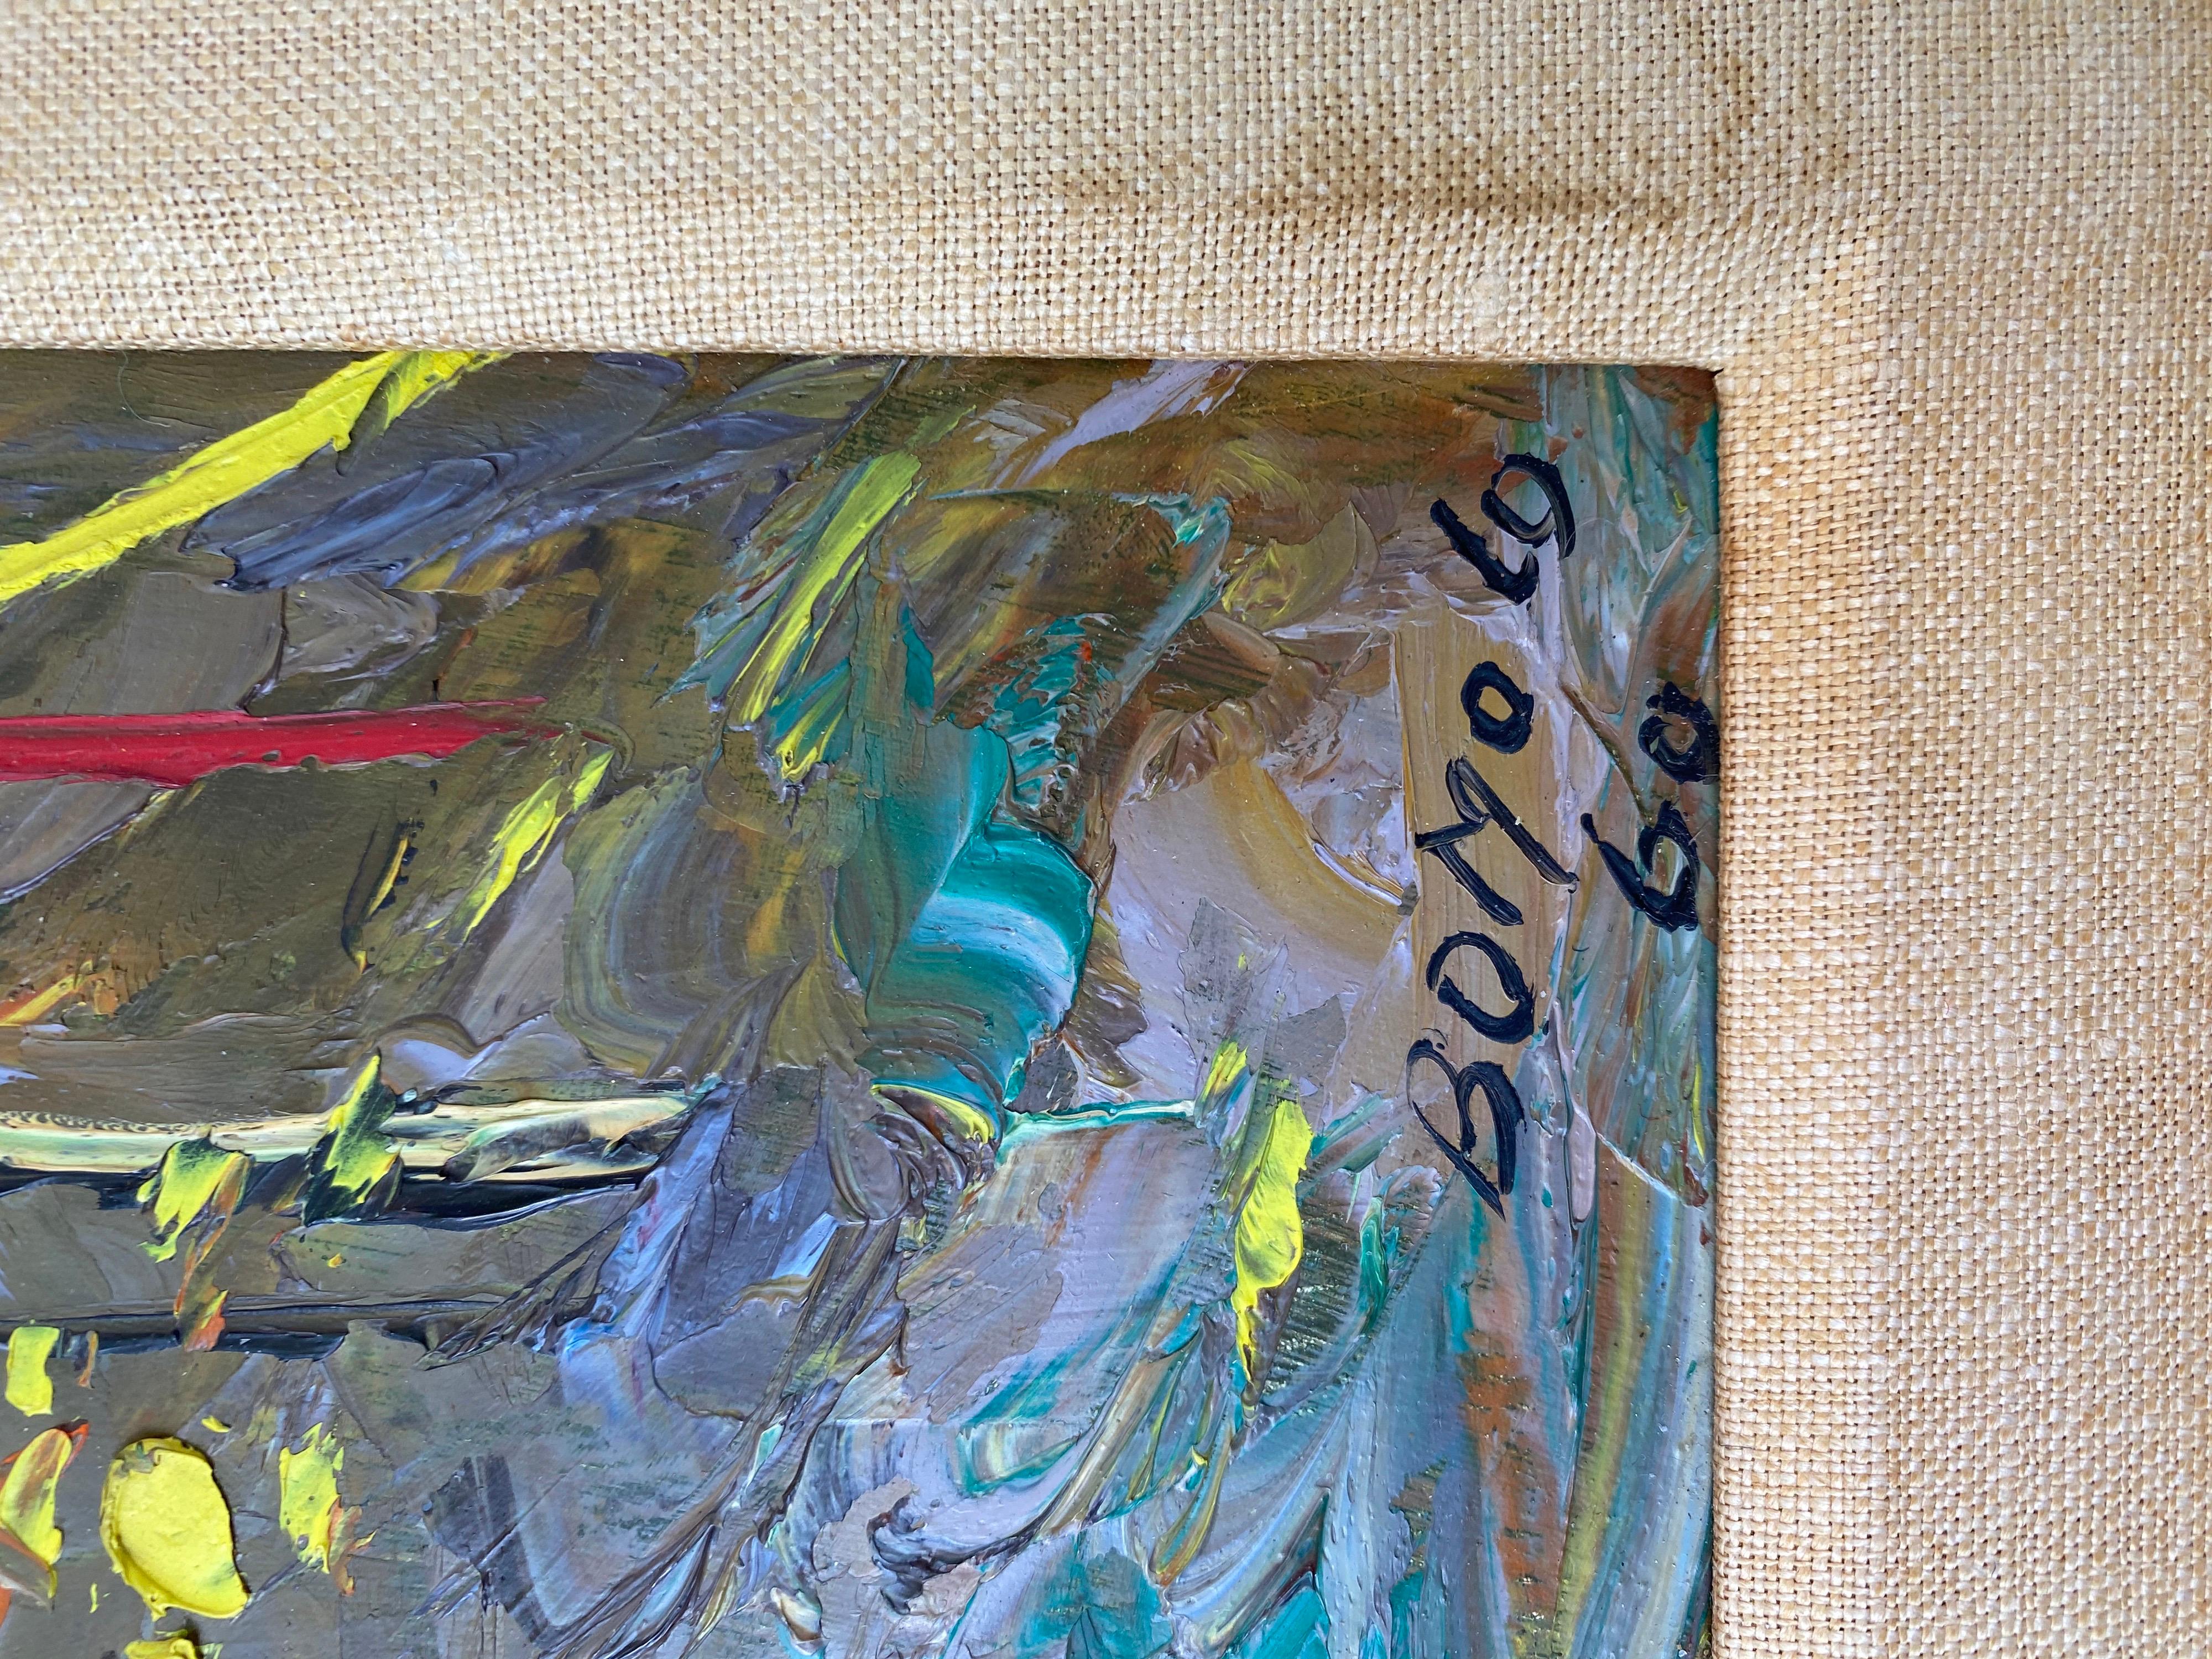 Bomolo huile sur toile peinture abstraite signée en bas à droite 1960. Connu à l'époque sous le nom de 